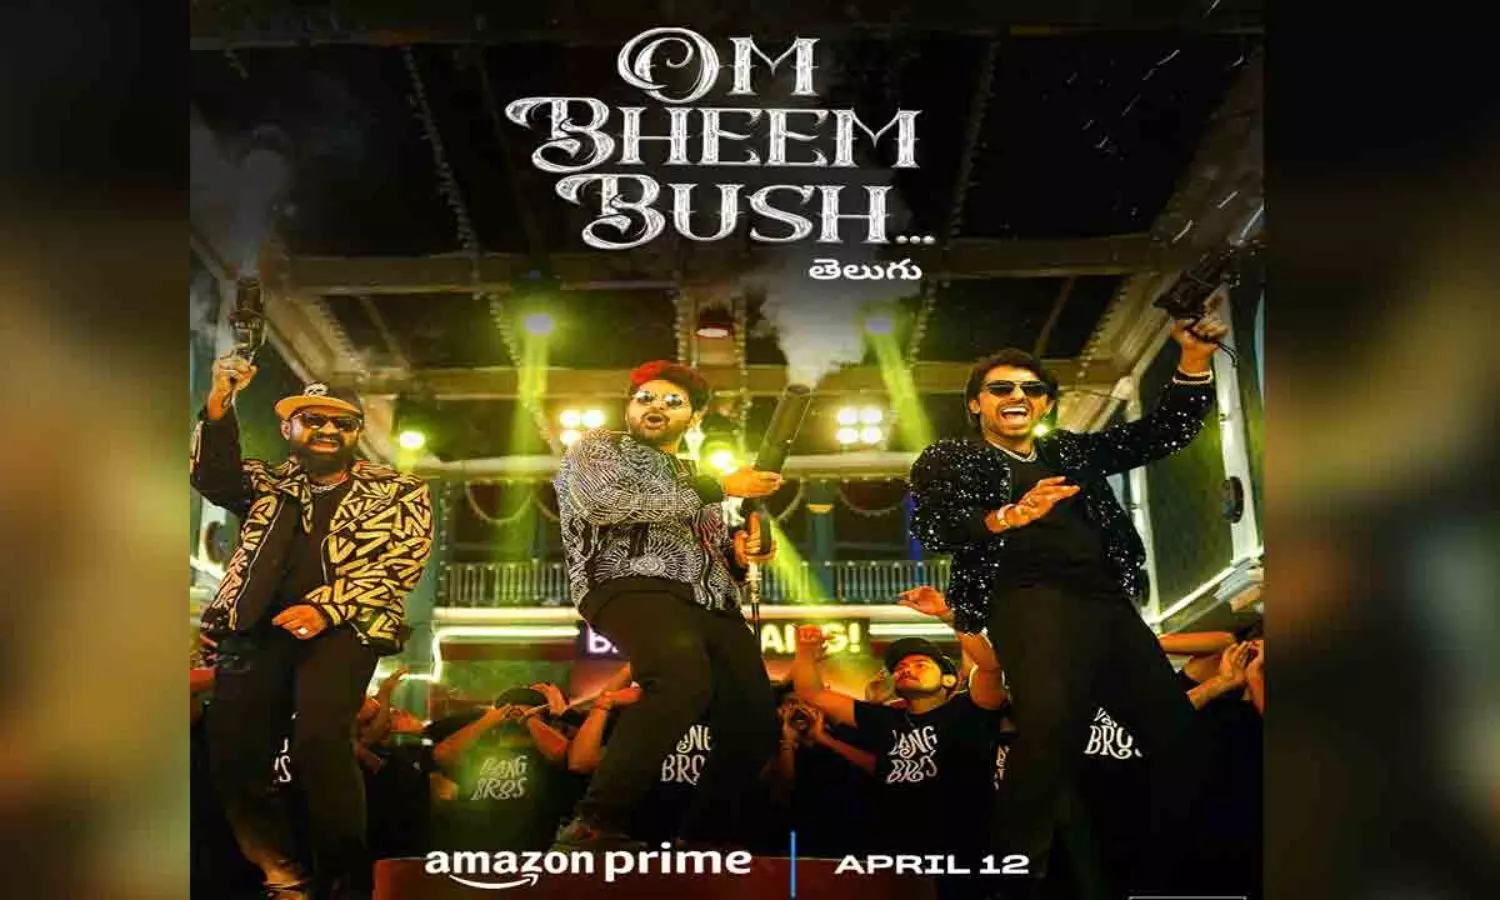 Om Bheem Bush Streams on Prime Video This April 12th